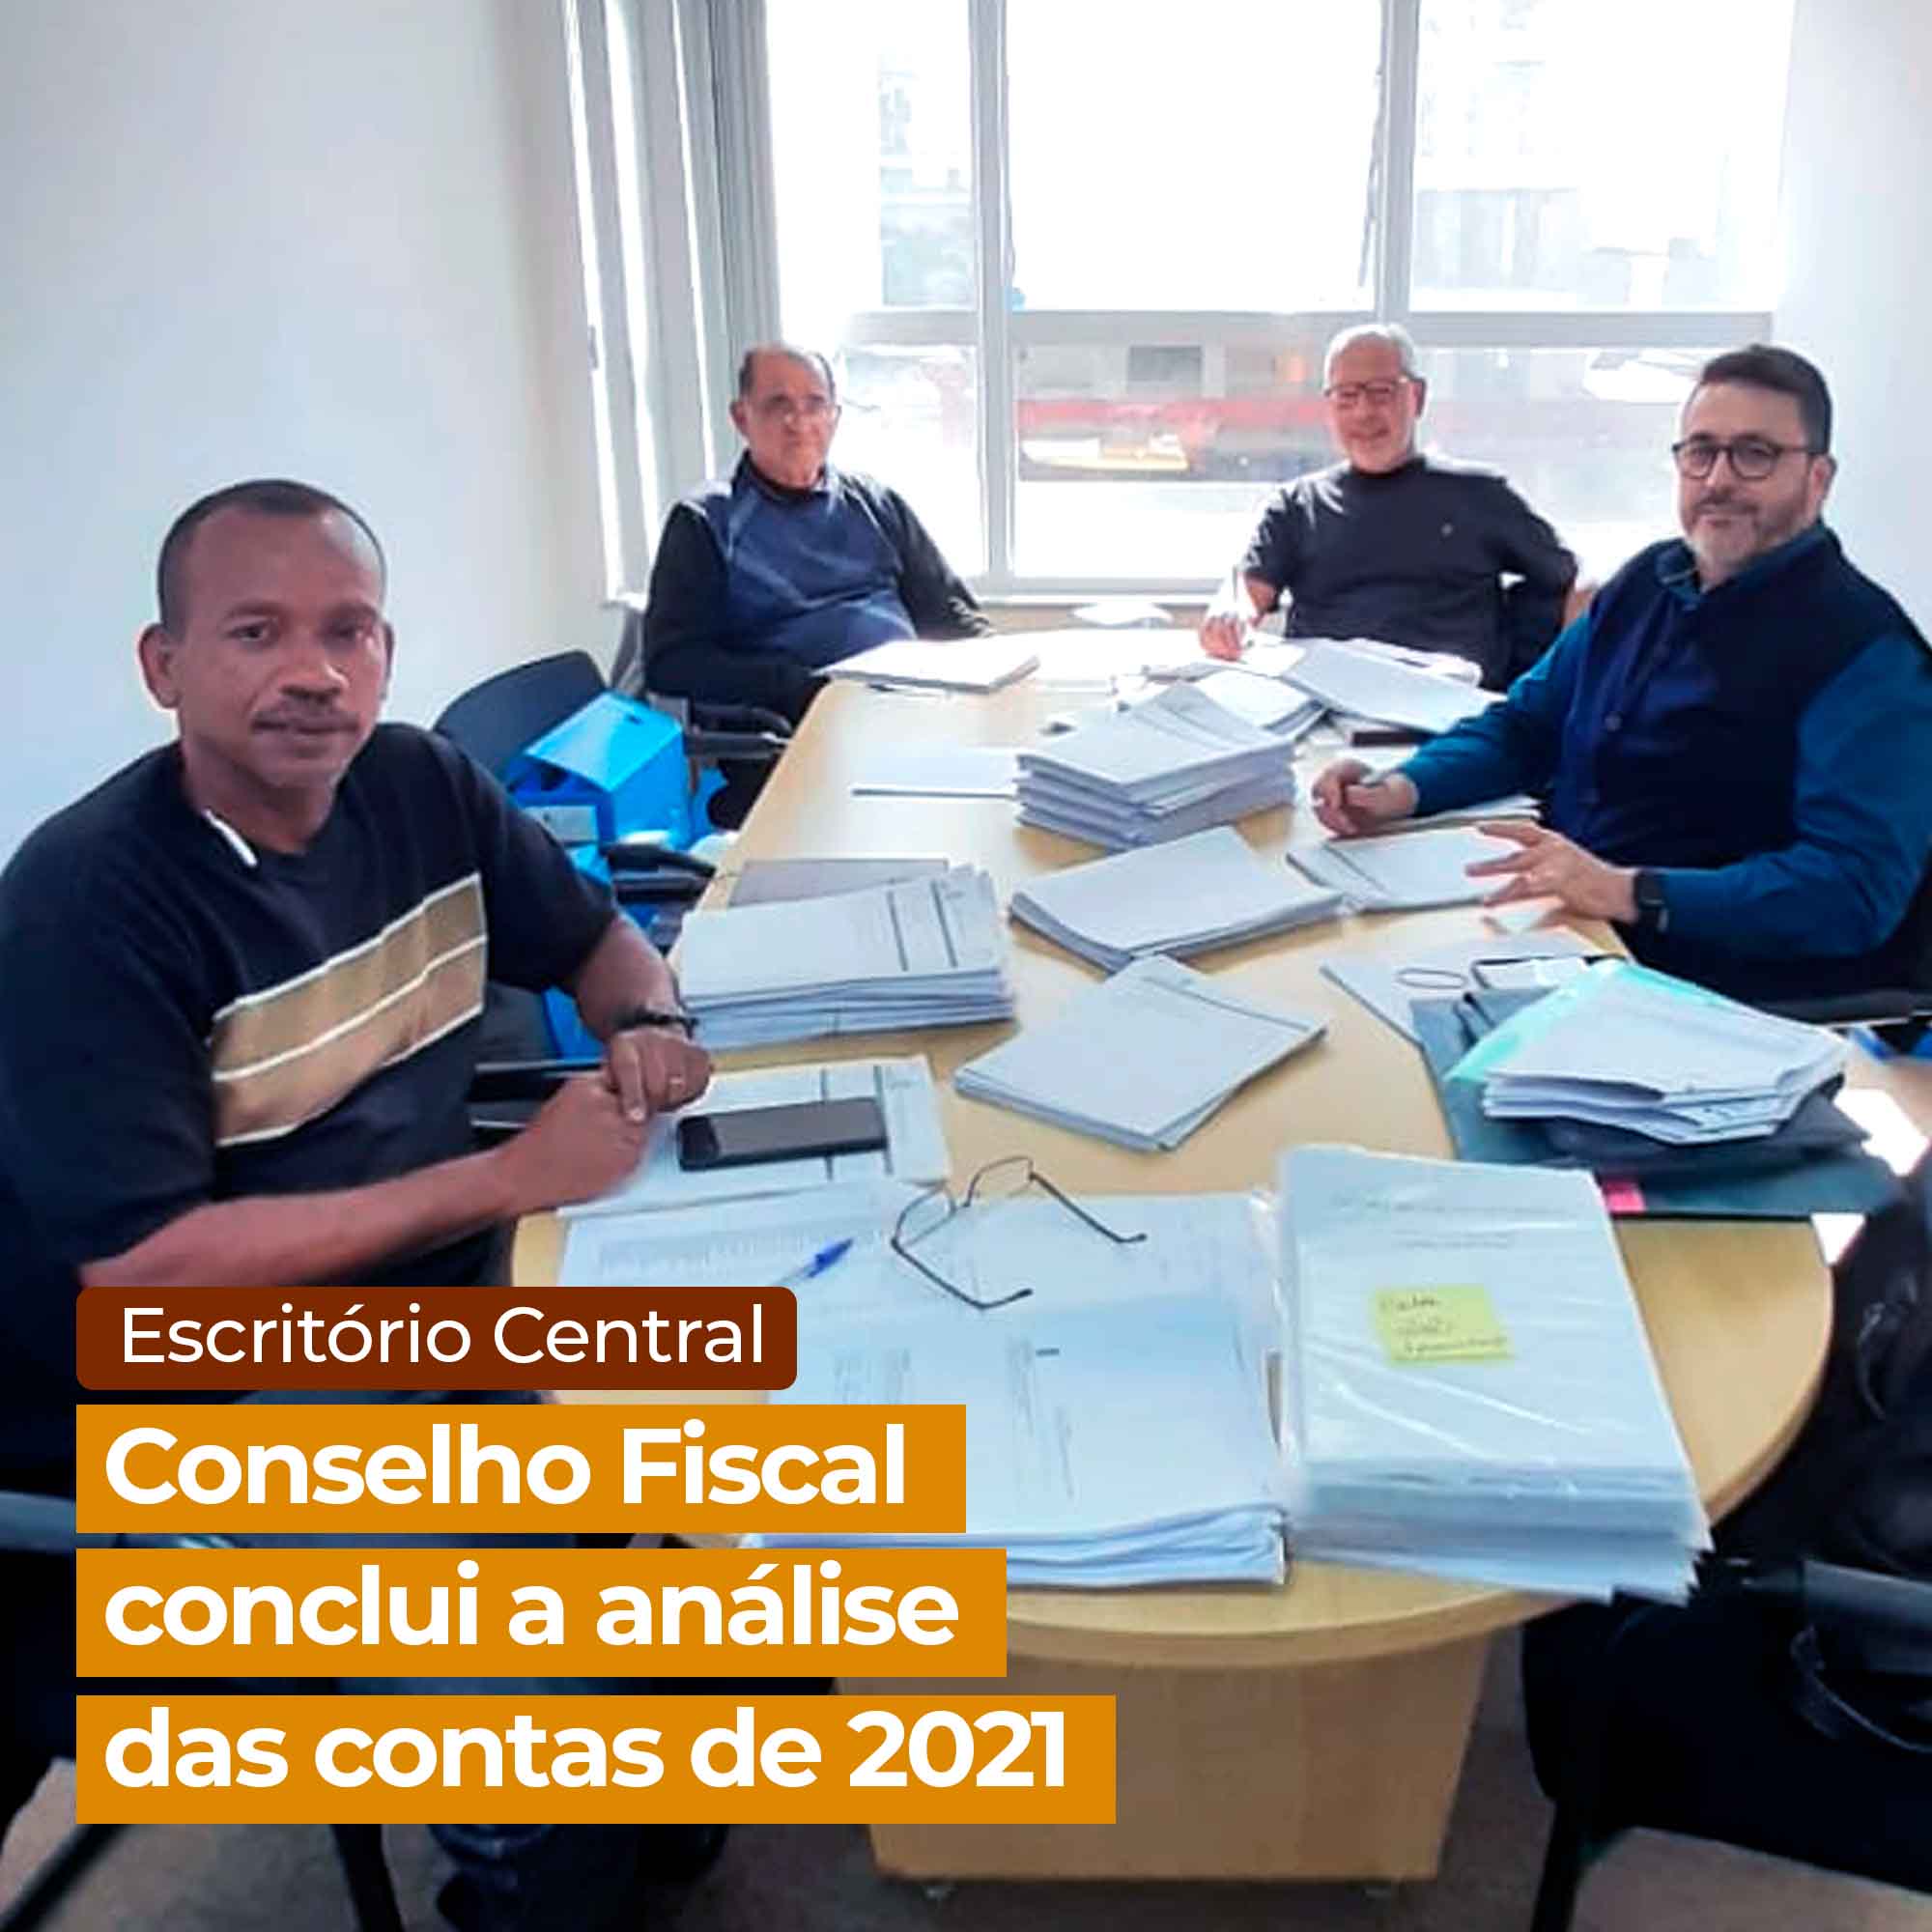 Conselho Fiscal conclui a análise das contas de 2021